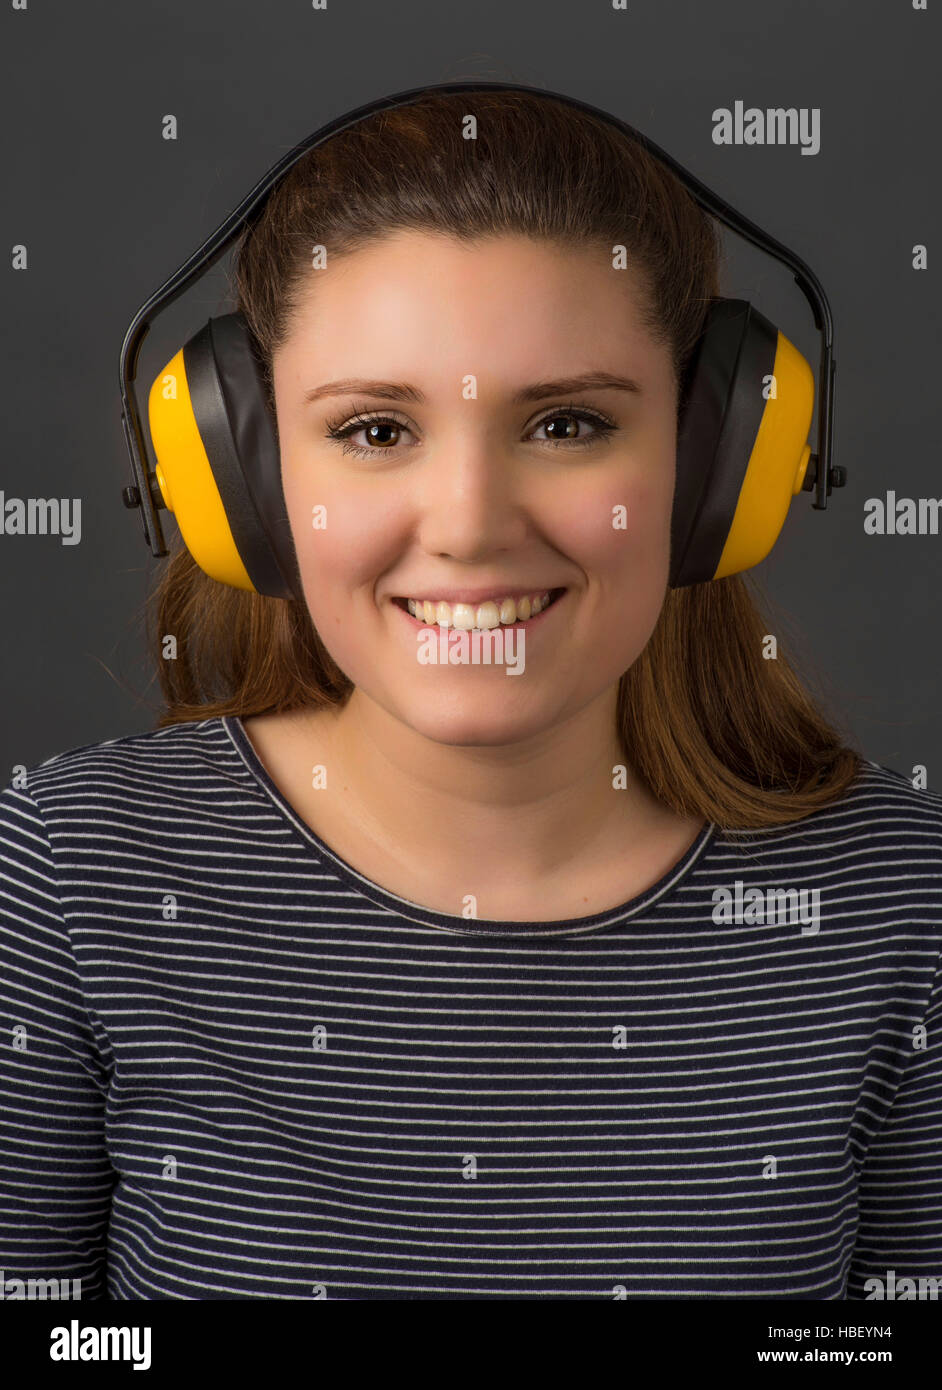 Junge Frau trägt gelbe Gehörschutz für Gehörschutz. Stockfoto